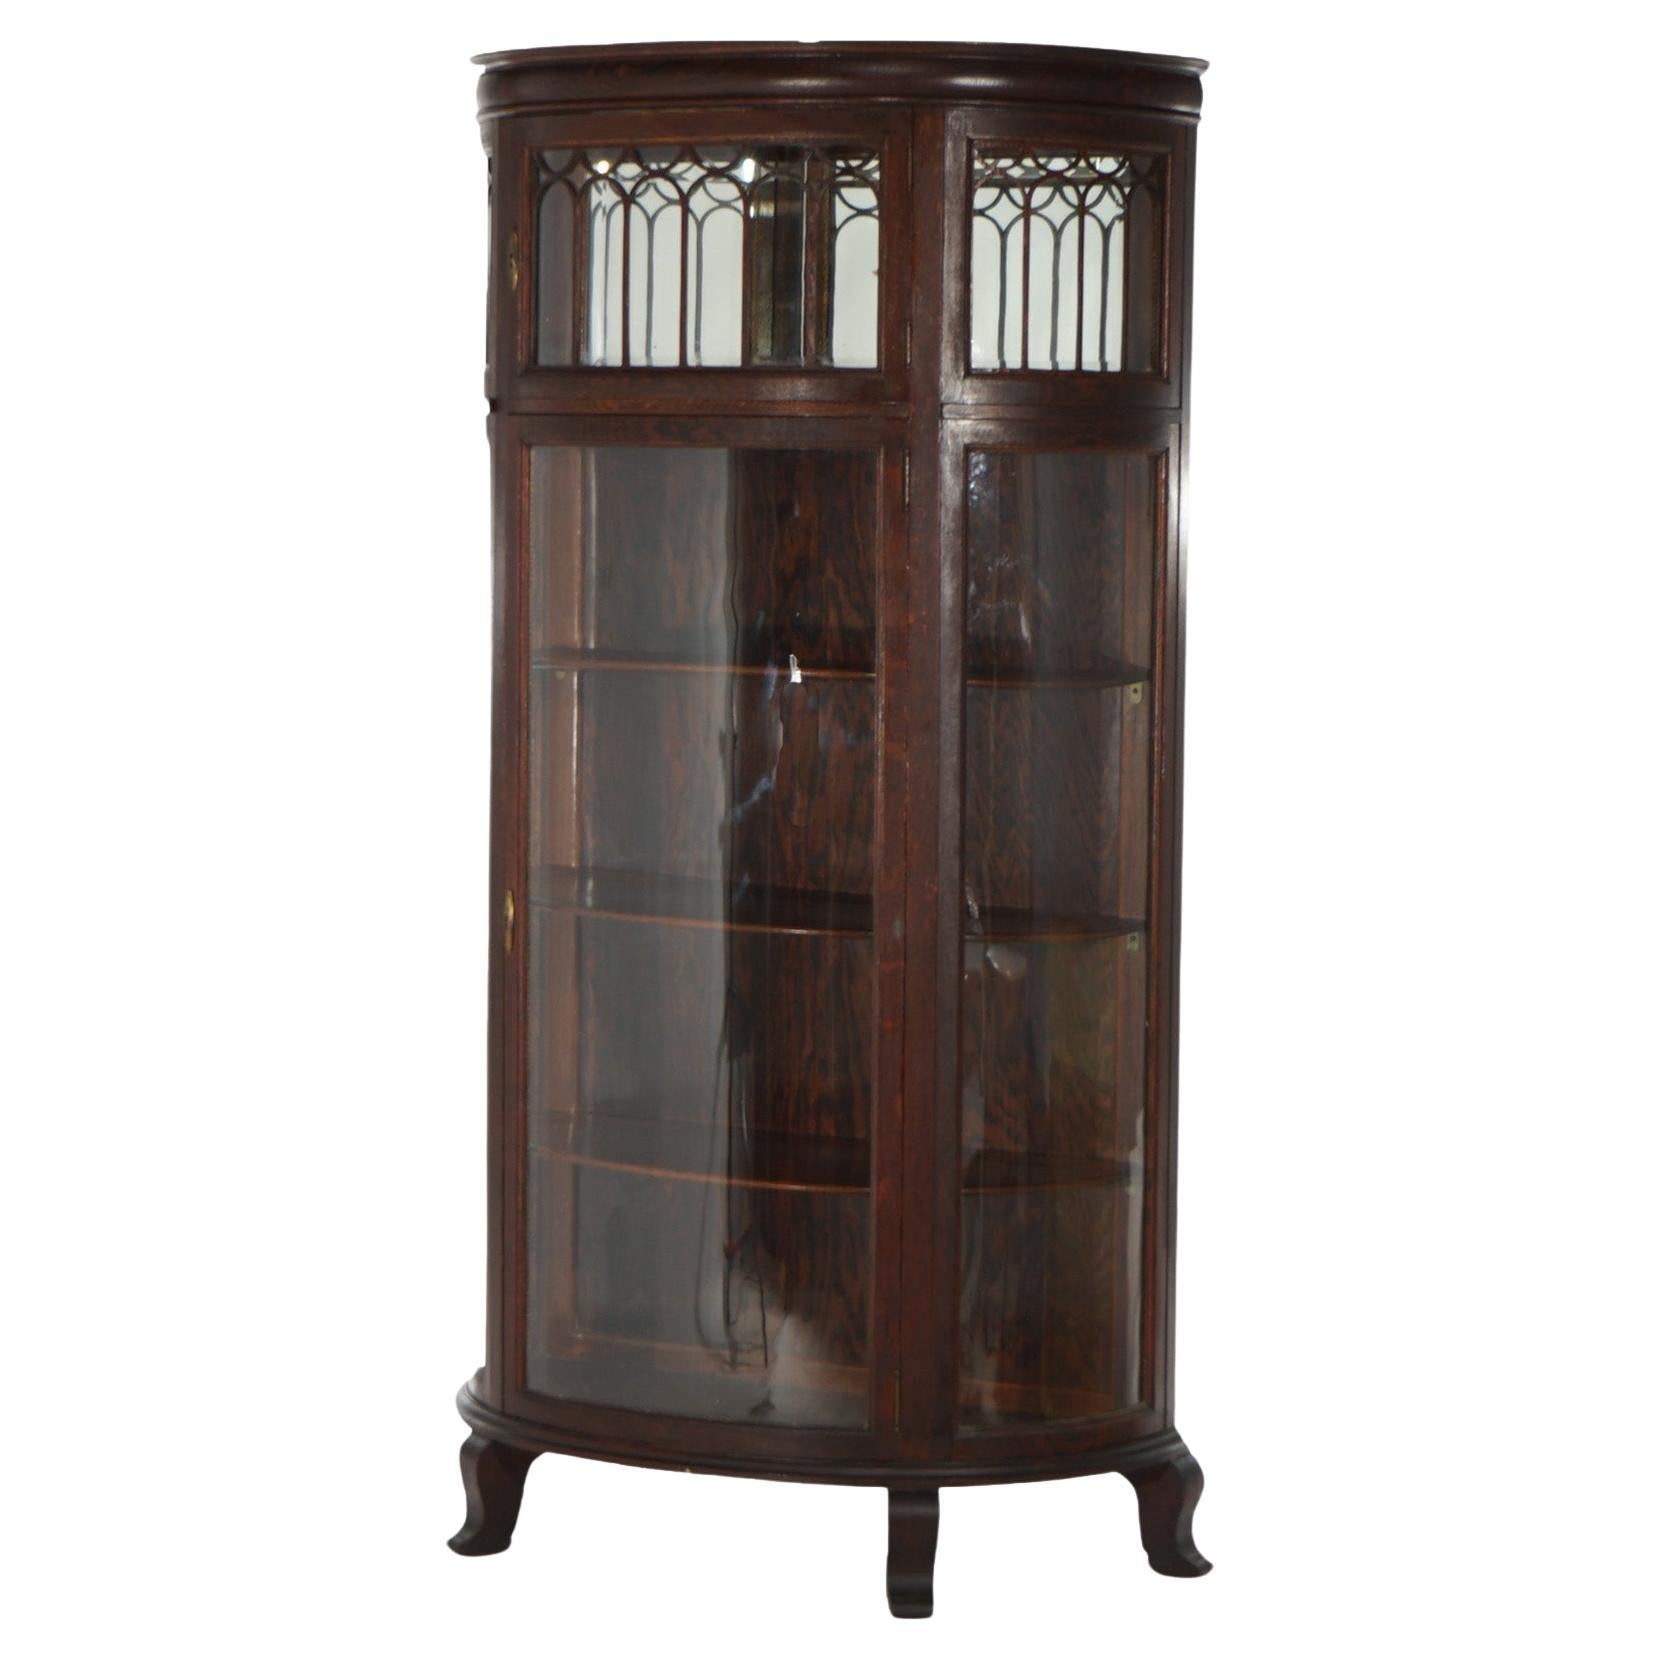 Antique RJ Horner Oak Curved Glass China Display Cabinet C1910